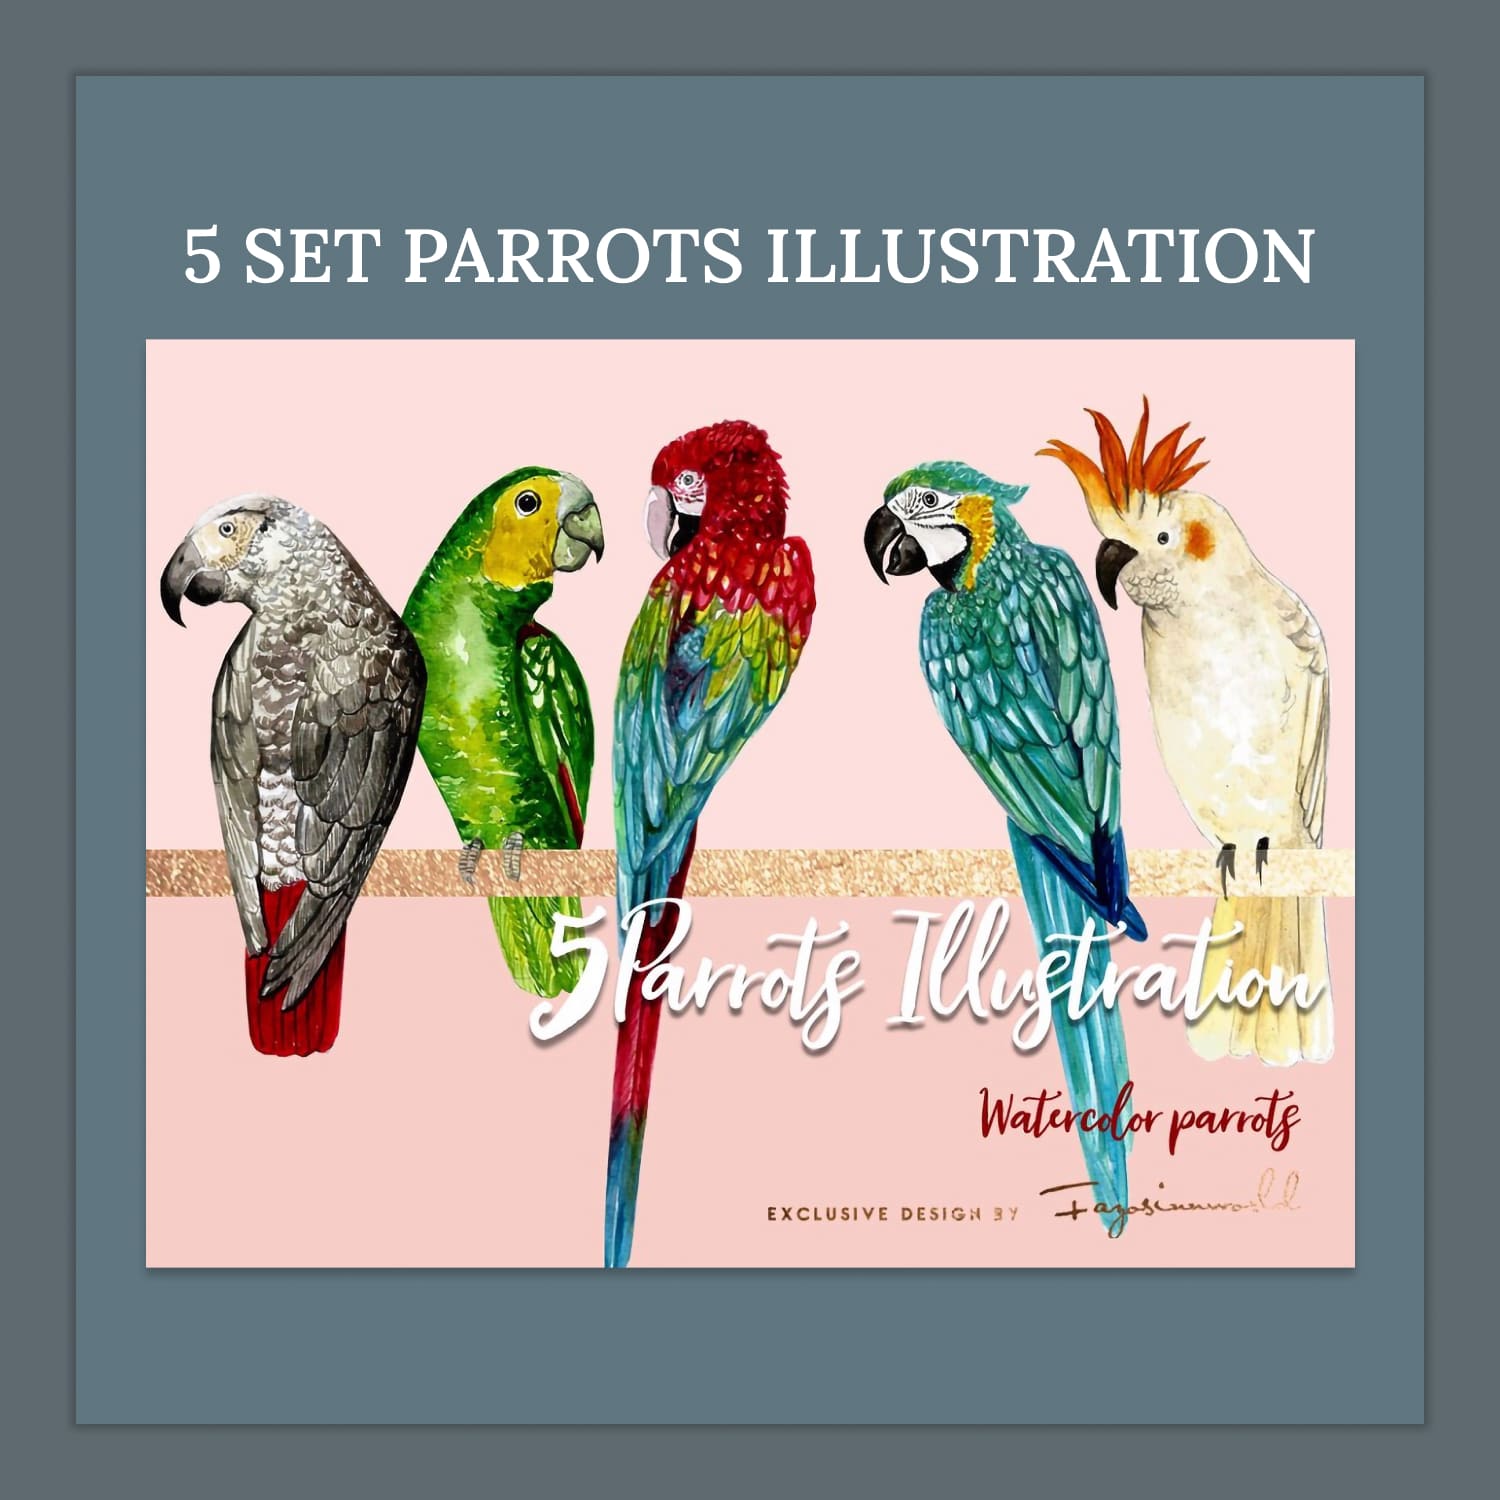 5 set parrots illustration - main image preview.